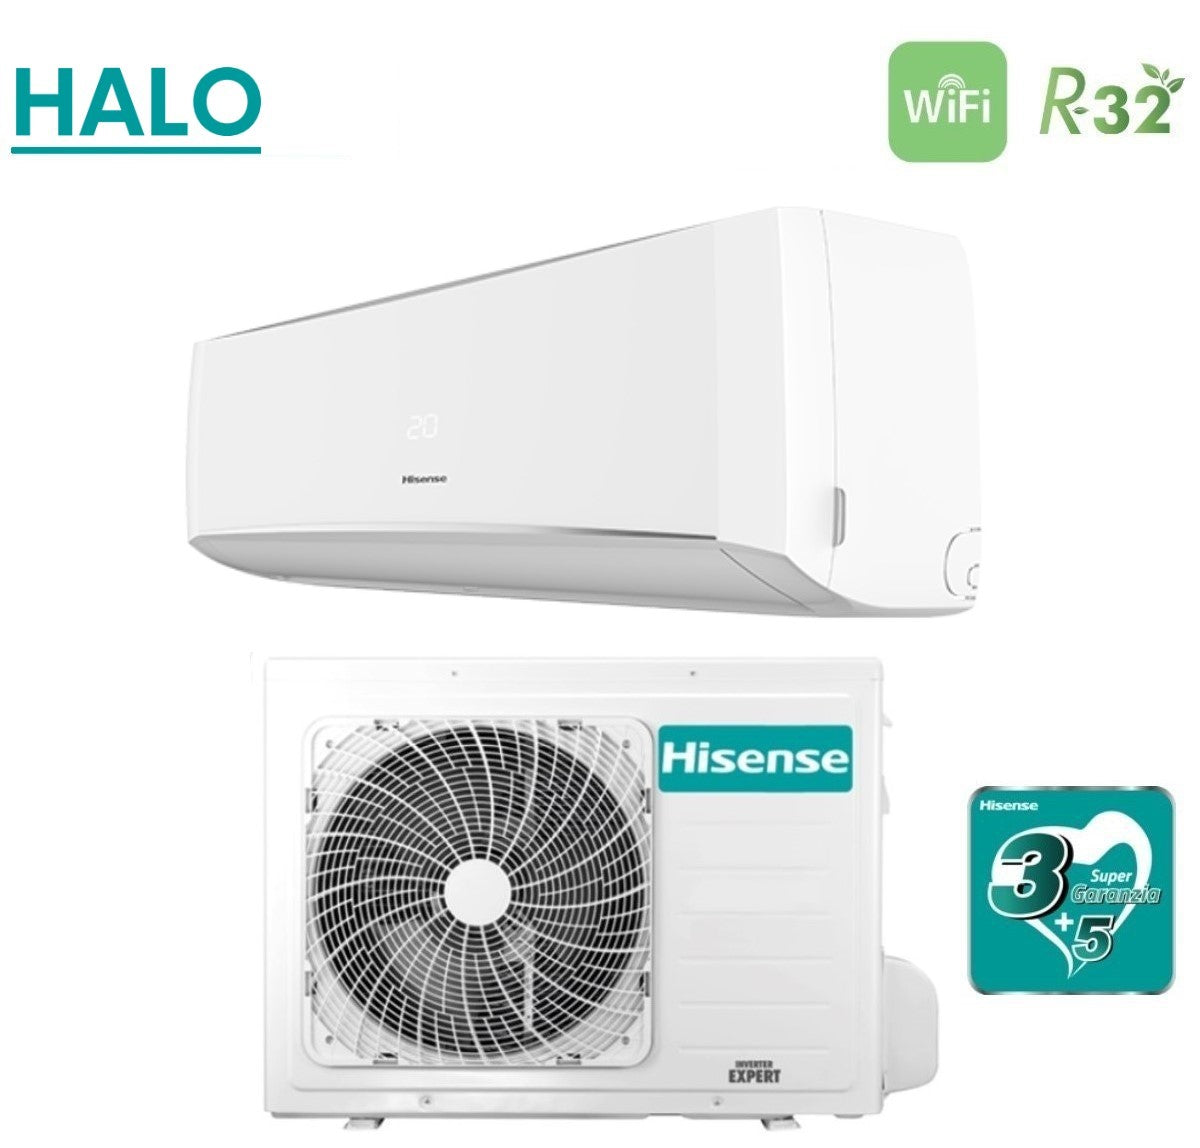 immagine-3-hisense-climatizzatore-condizionatore-hisense-inverter-serie-halo-9000-btu-cbyr0903g-r-32-wi-fi-optional-aa